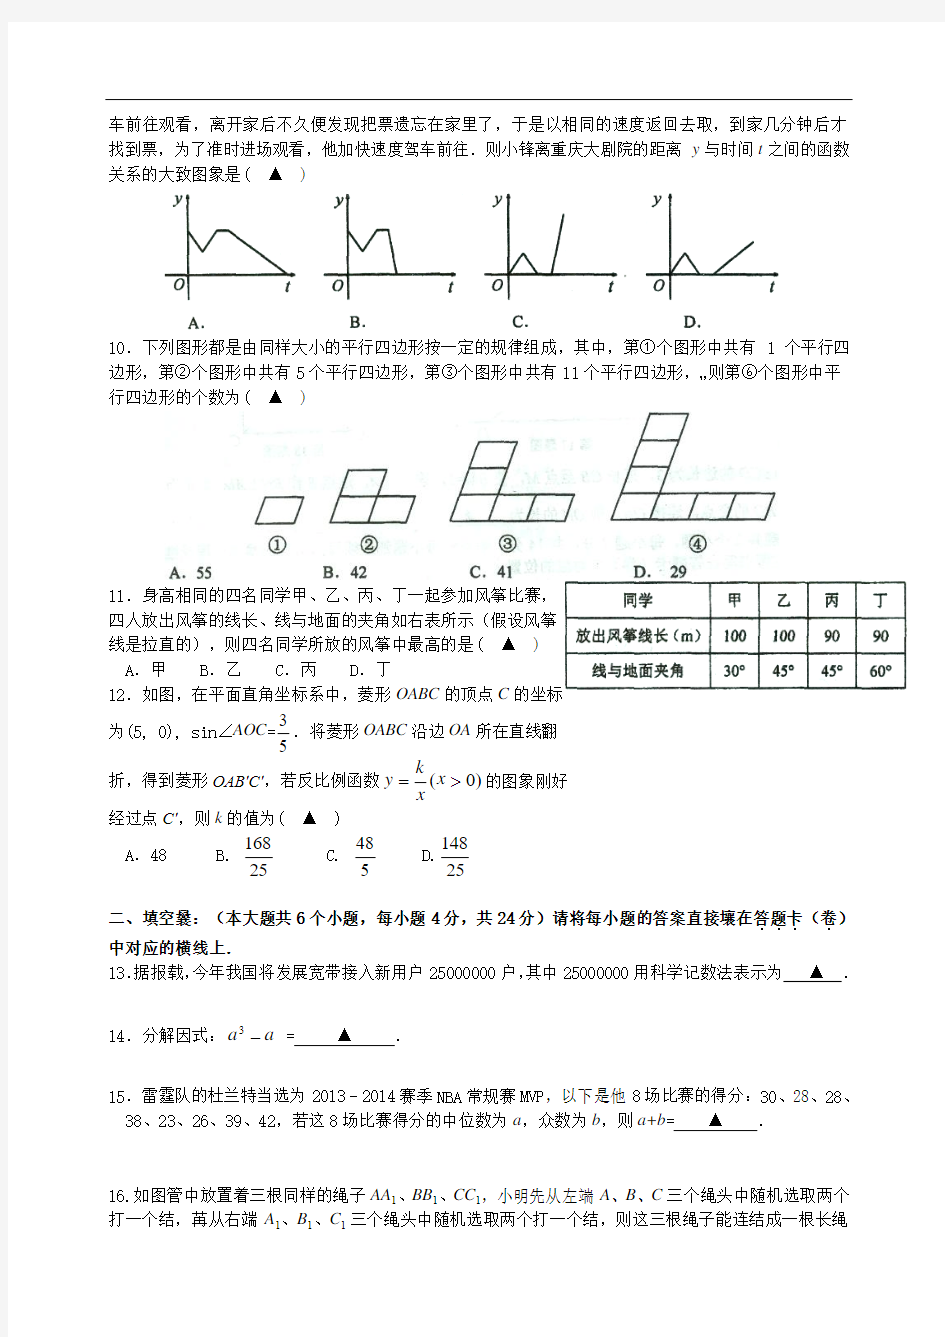 重庆南开中学初2015级初三9月月考数学试题(无答案)